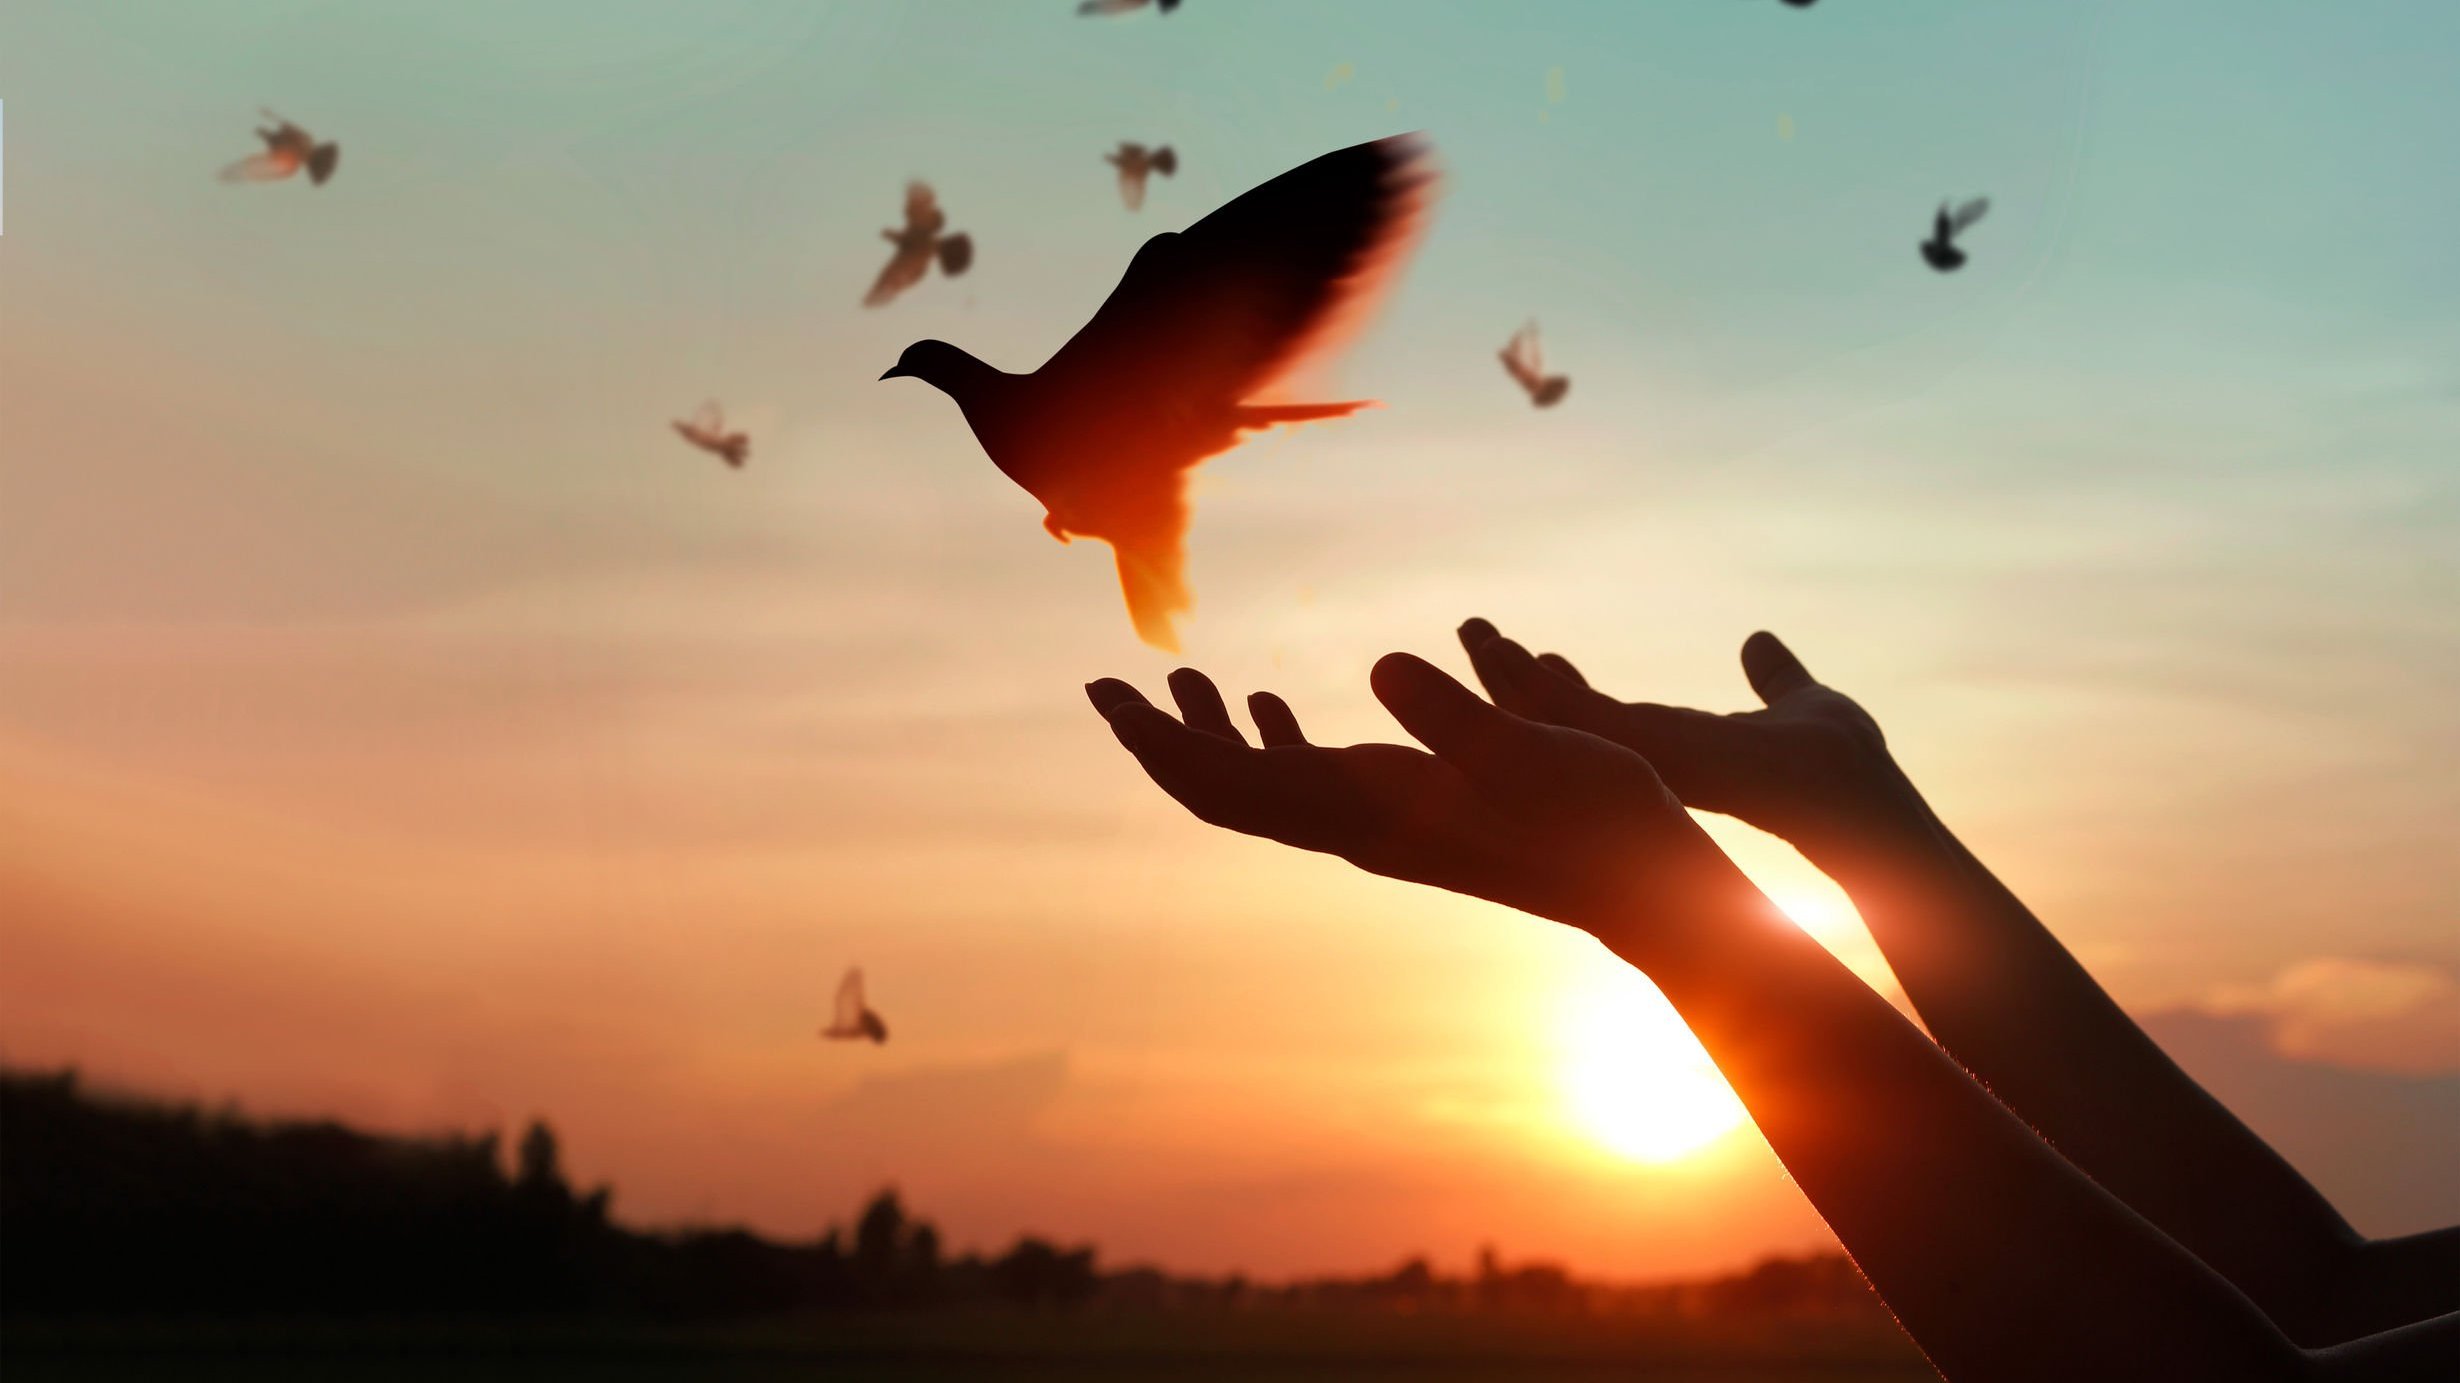 Mãos soltando uma pomba durante o pôr do sol, enquanto várias outras pombas voam no céu.